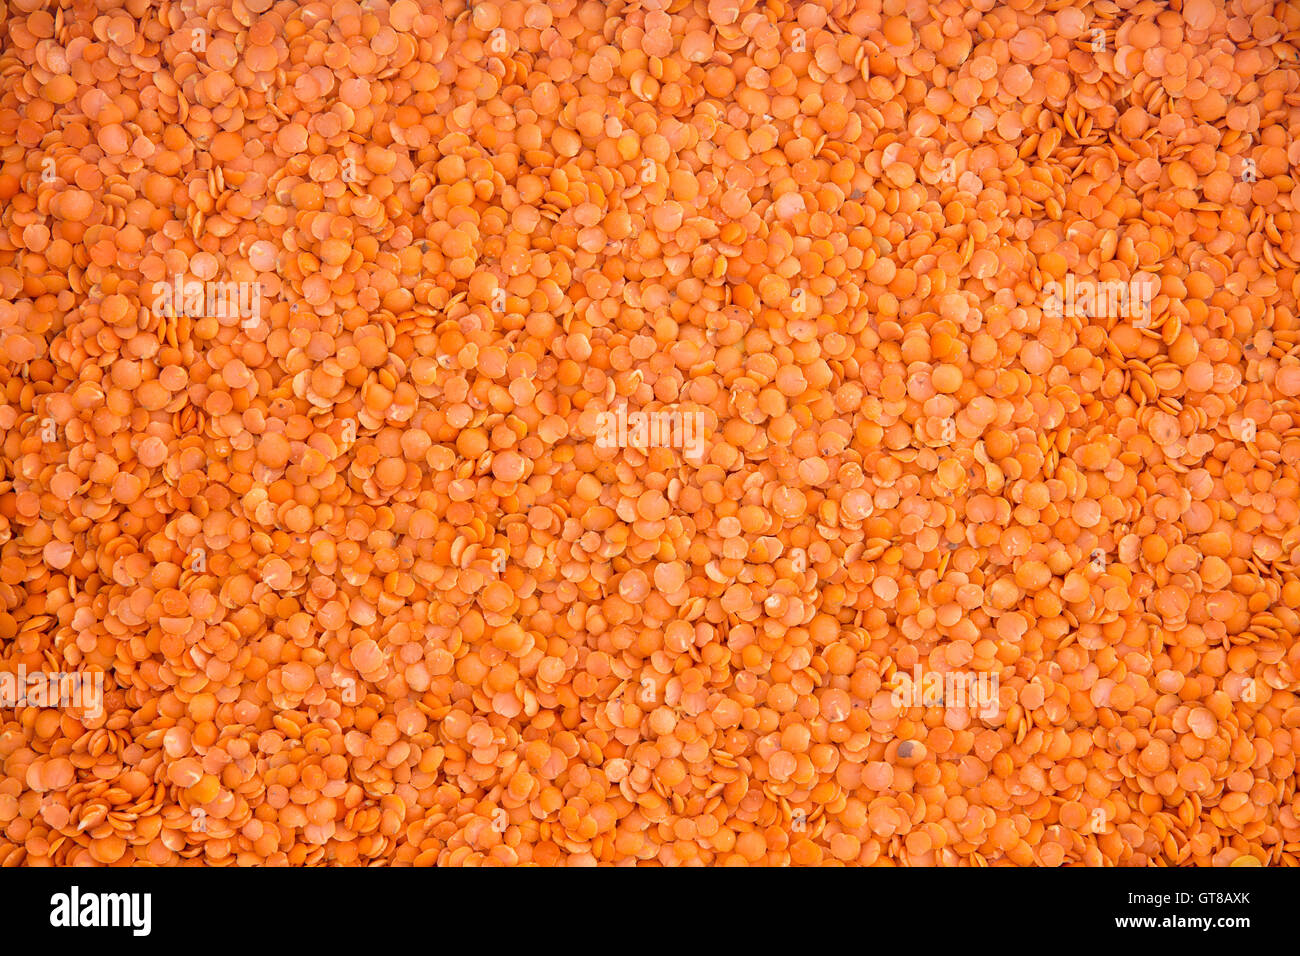 Arrière-plan de l'alimentation des graines de lentille rouge séché, une légumineuse nutritive populaire dans les régimes végétariens et végétaliens Banque D'Images